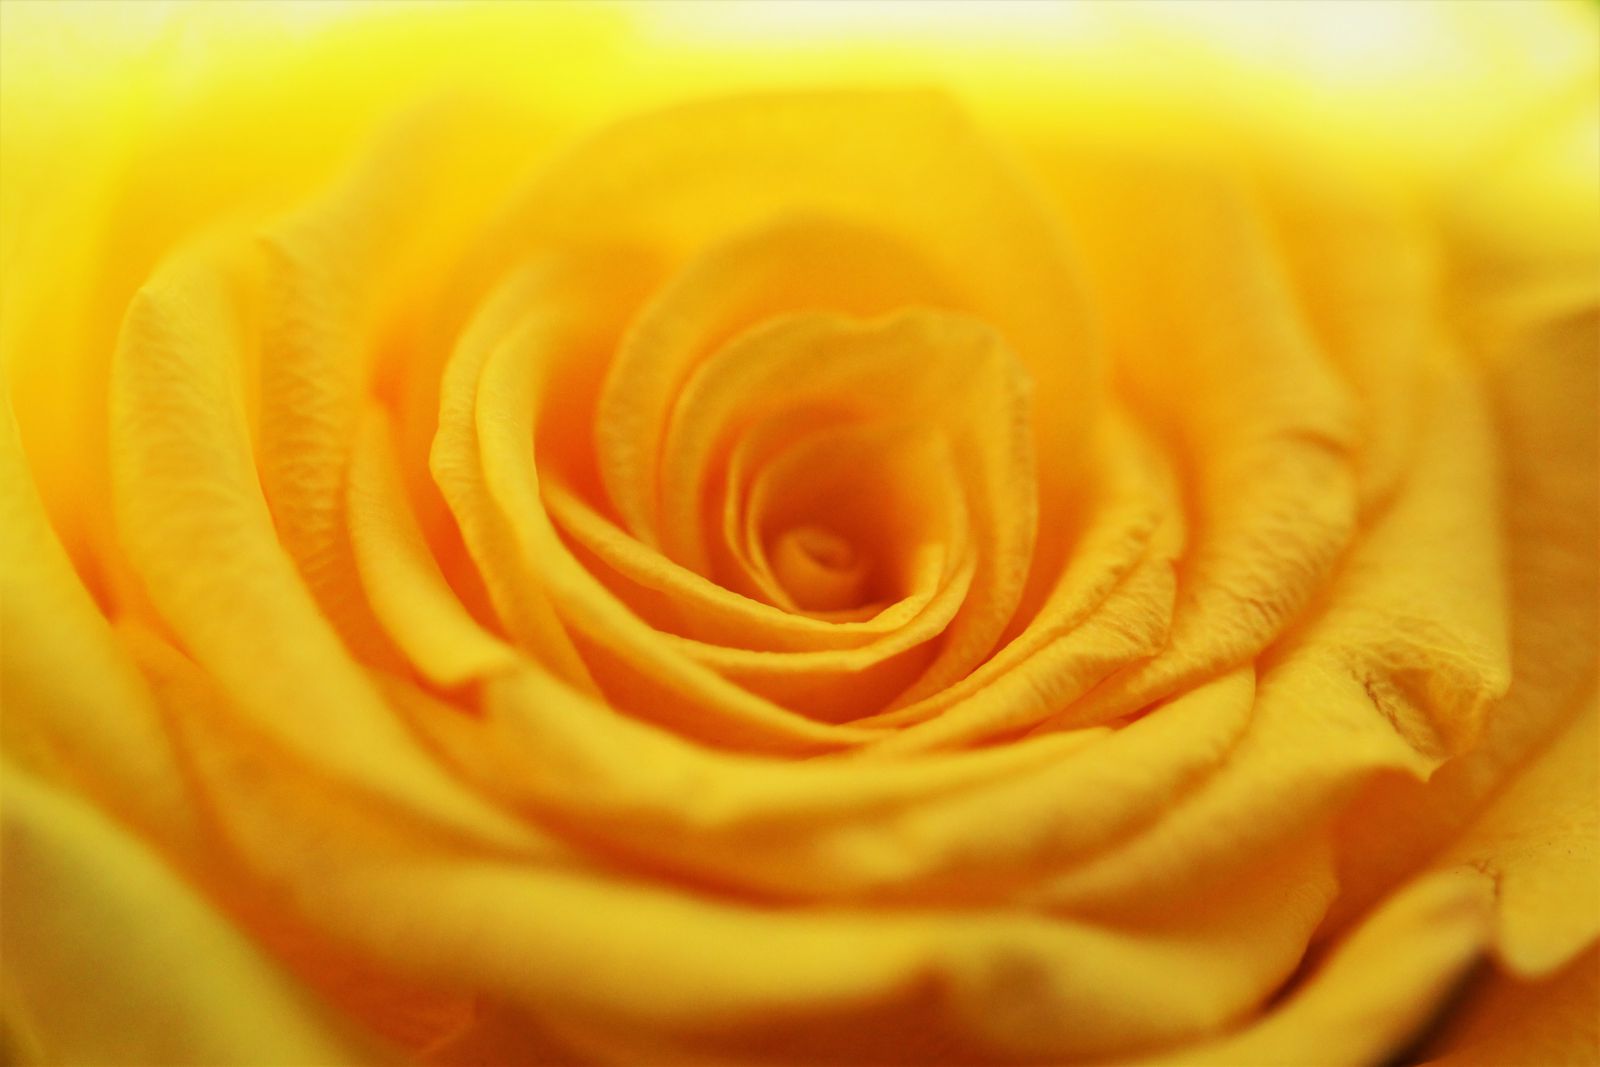 Imagem ampliada de uma rosa.